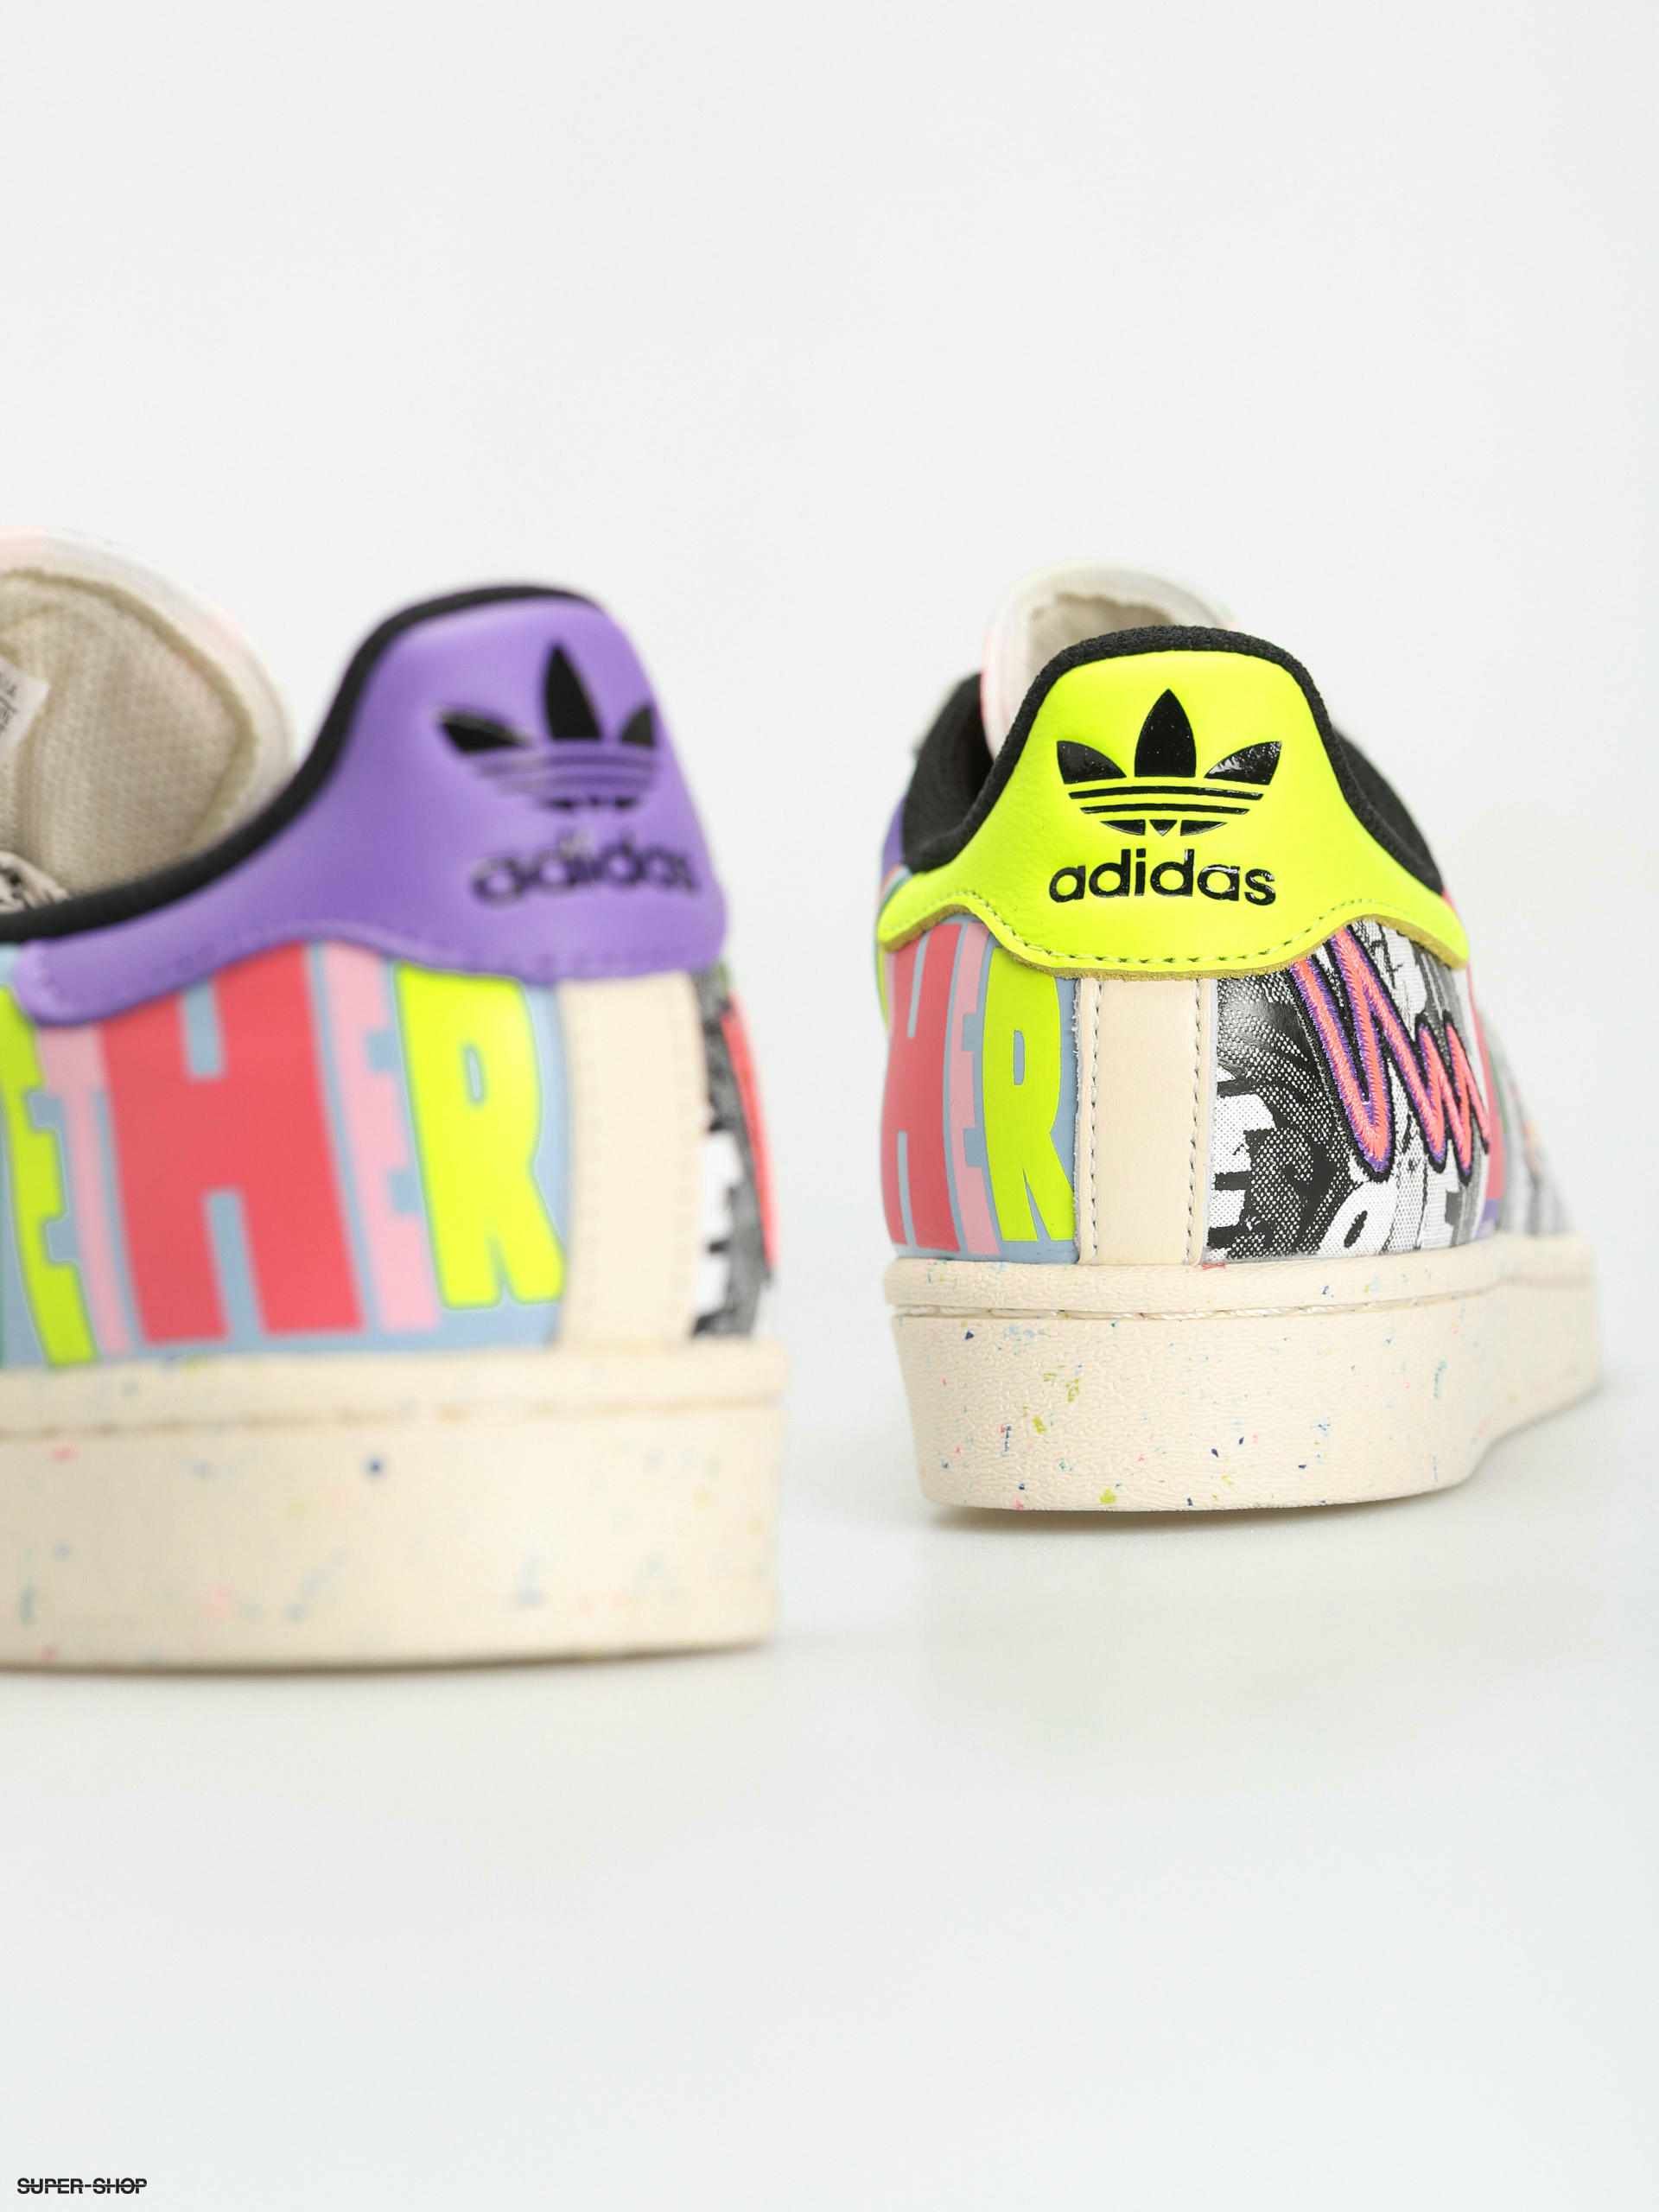 adidas Originals Superstar Pride Shoes (cwhite/cwhite/cblack)